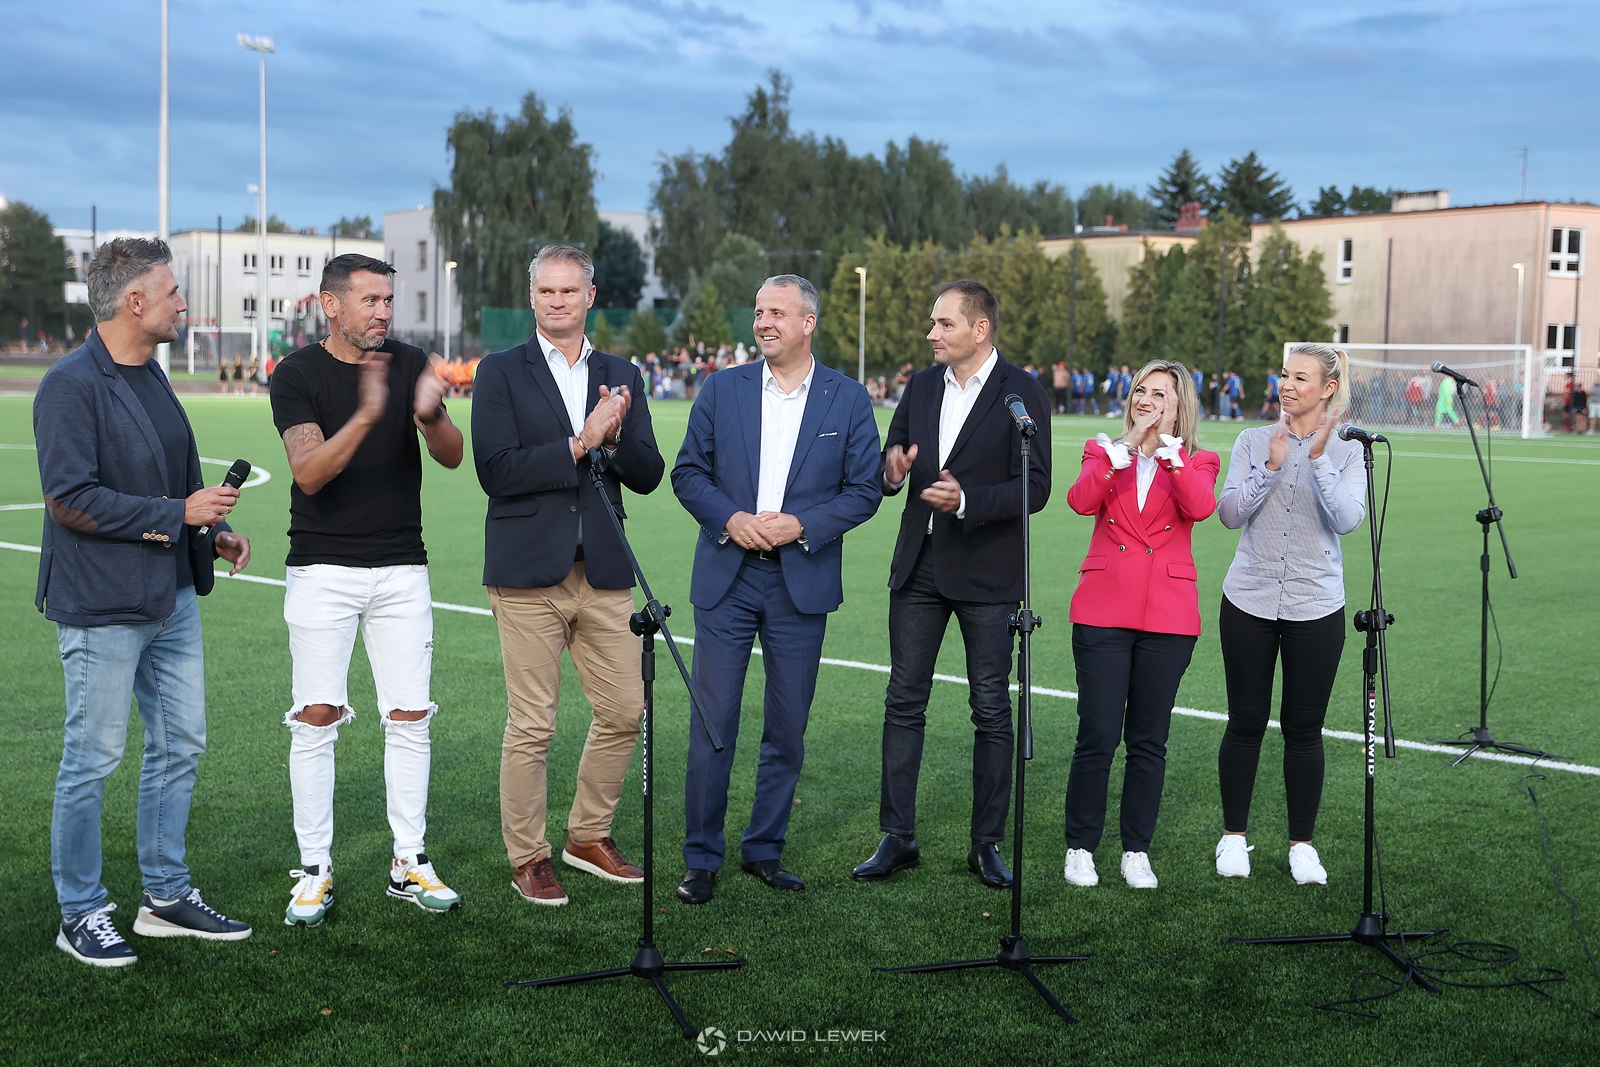 Na zdjęciu widoczna grupa ludzi stojąca na boisku do piłki nożnej - od lewej 5 mężczyzn, następnie dwie kobiety. Przed nimi cztery mikrofony na statywach.